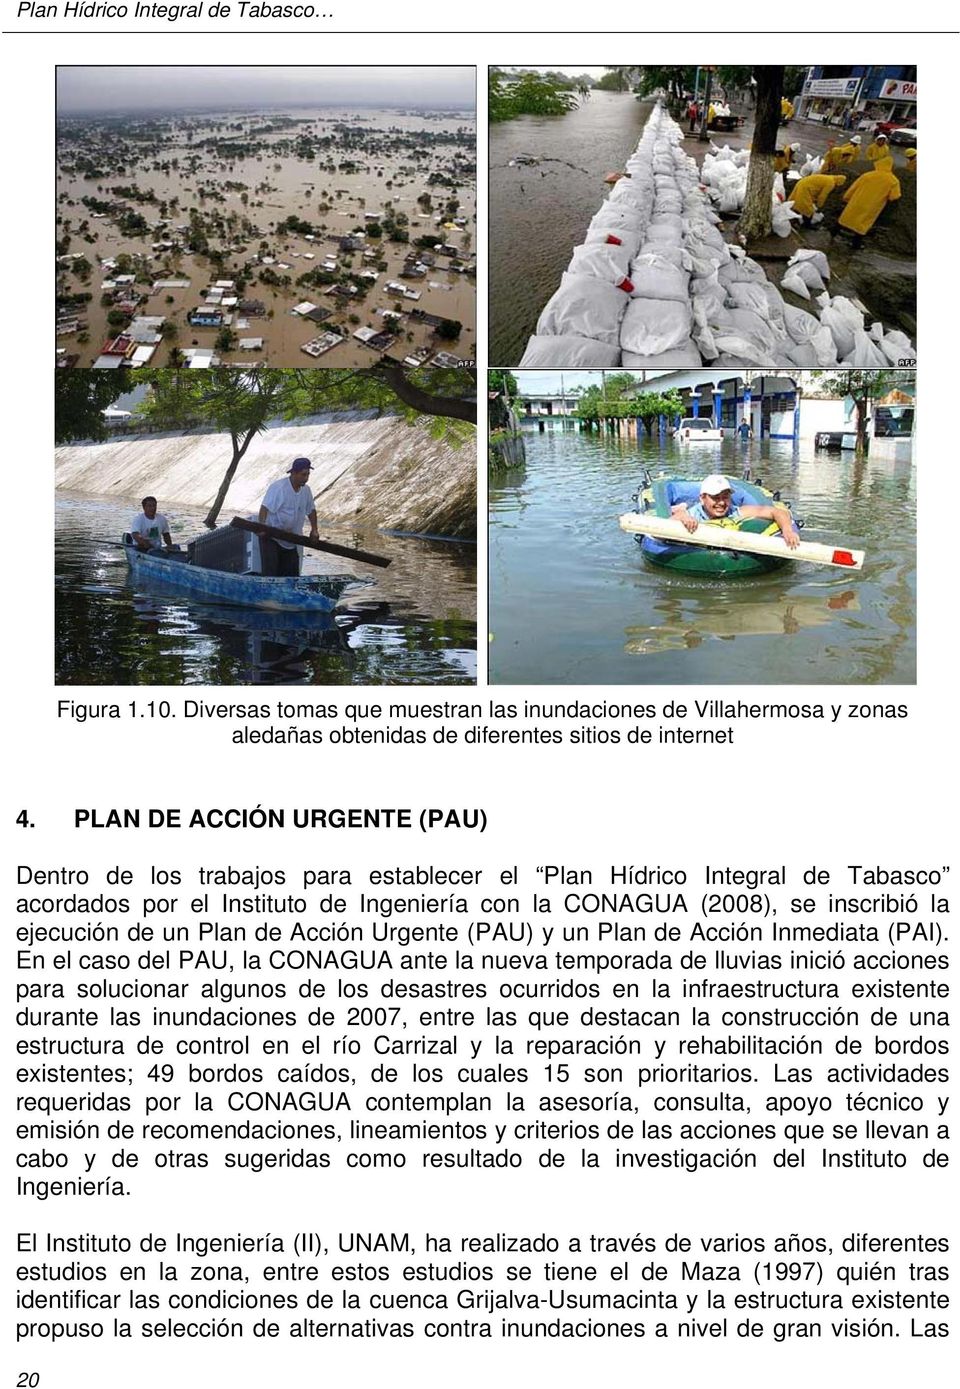 Plan de Acción Urgente (PAU) y un Plan de Acción Inmediata (PAI).